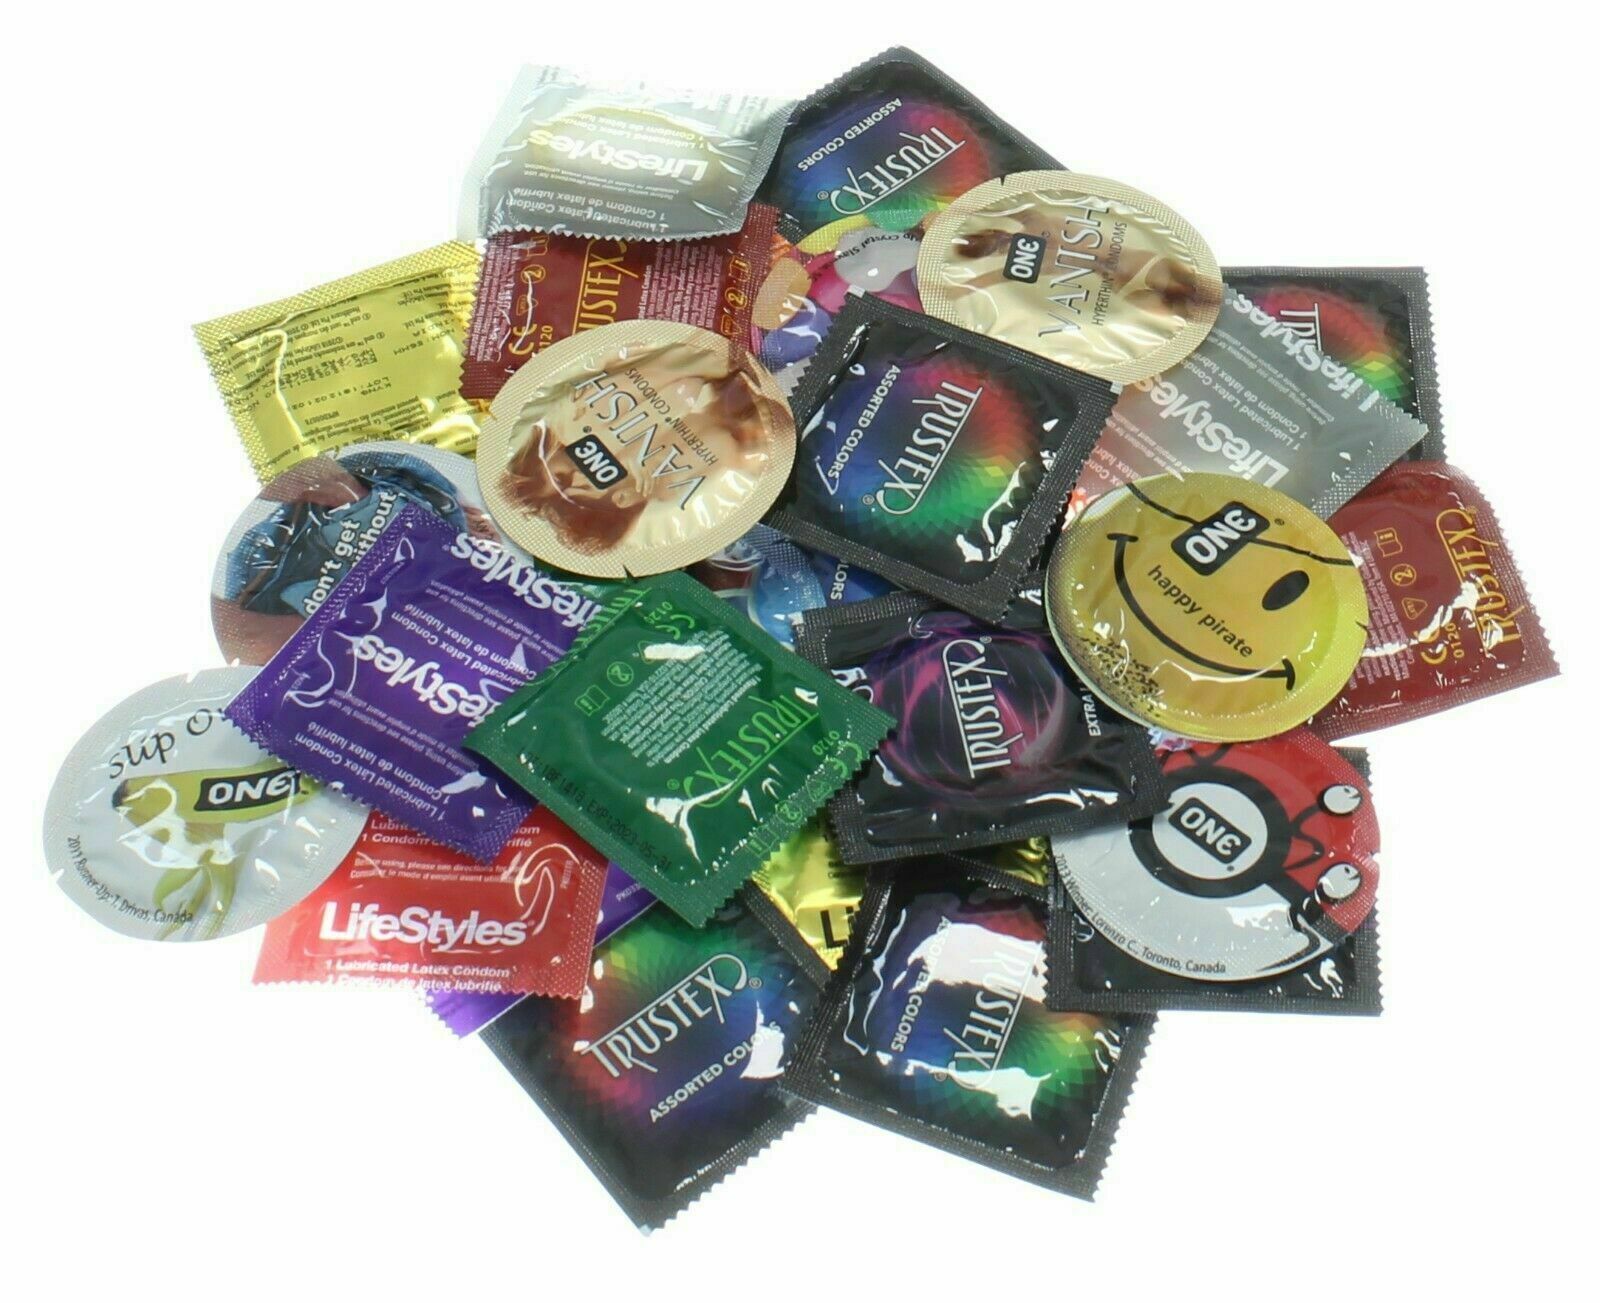 50 CONDOMS - Trustex, Lifestyles, One, & More Condoms Pack